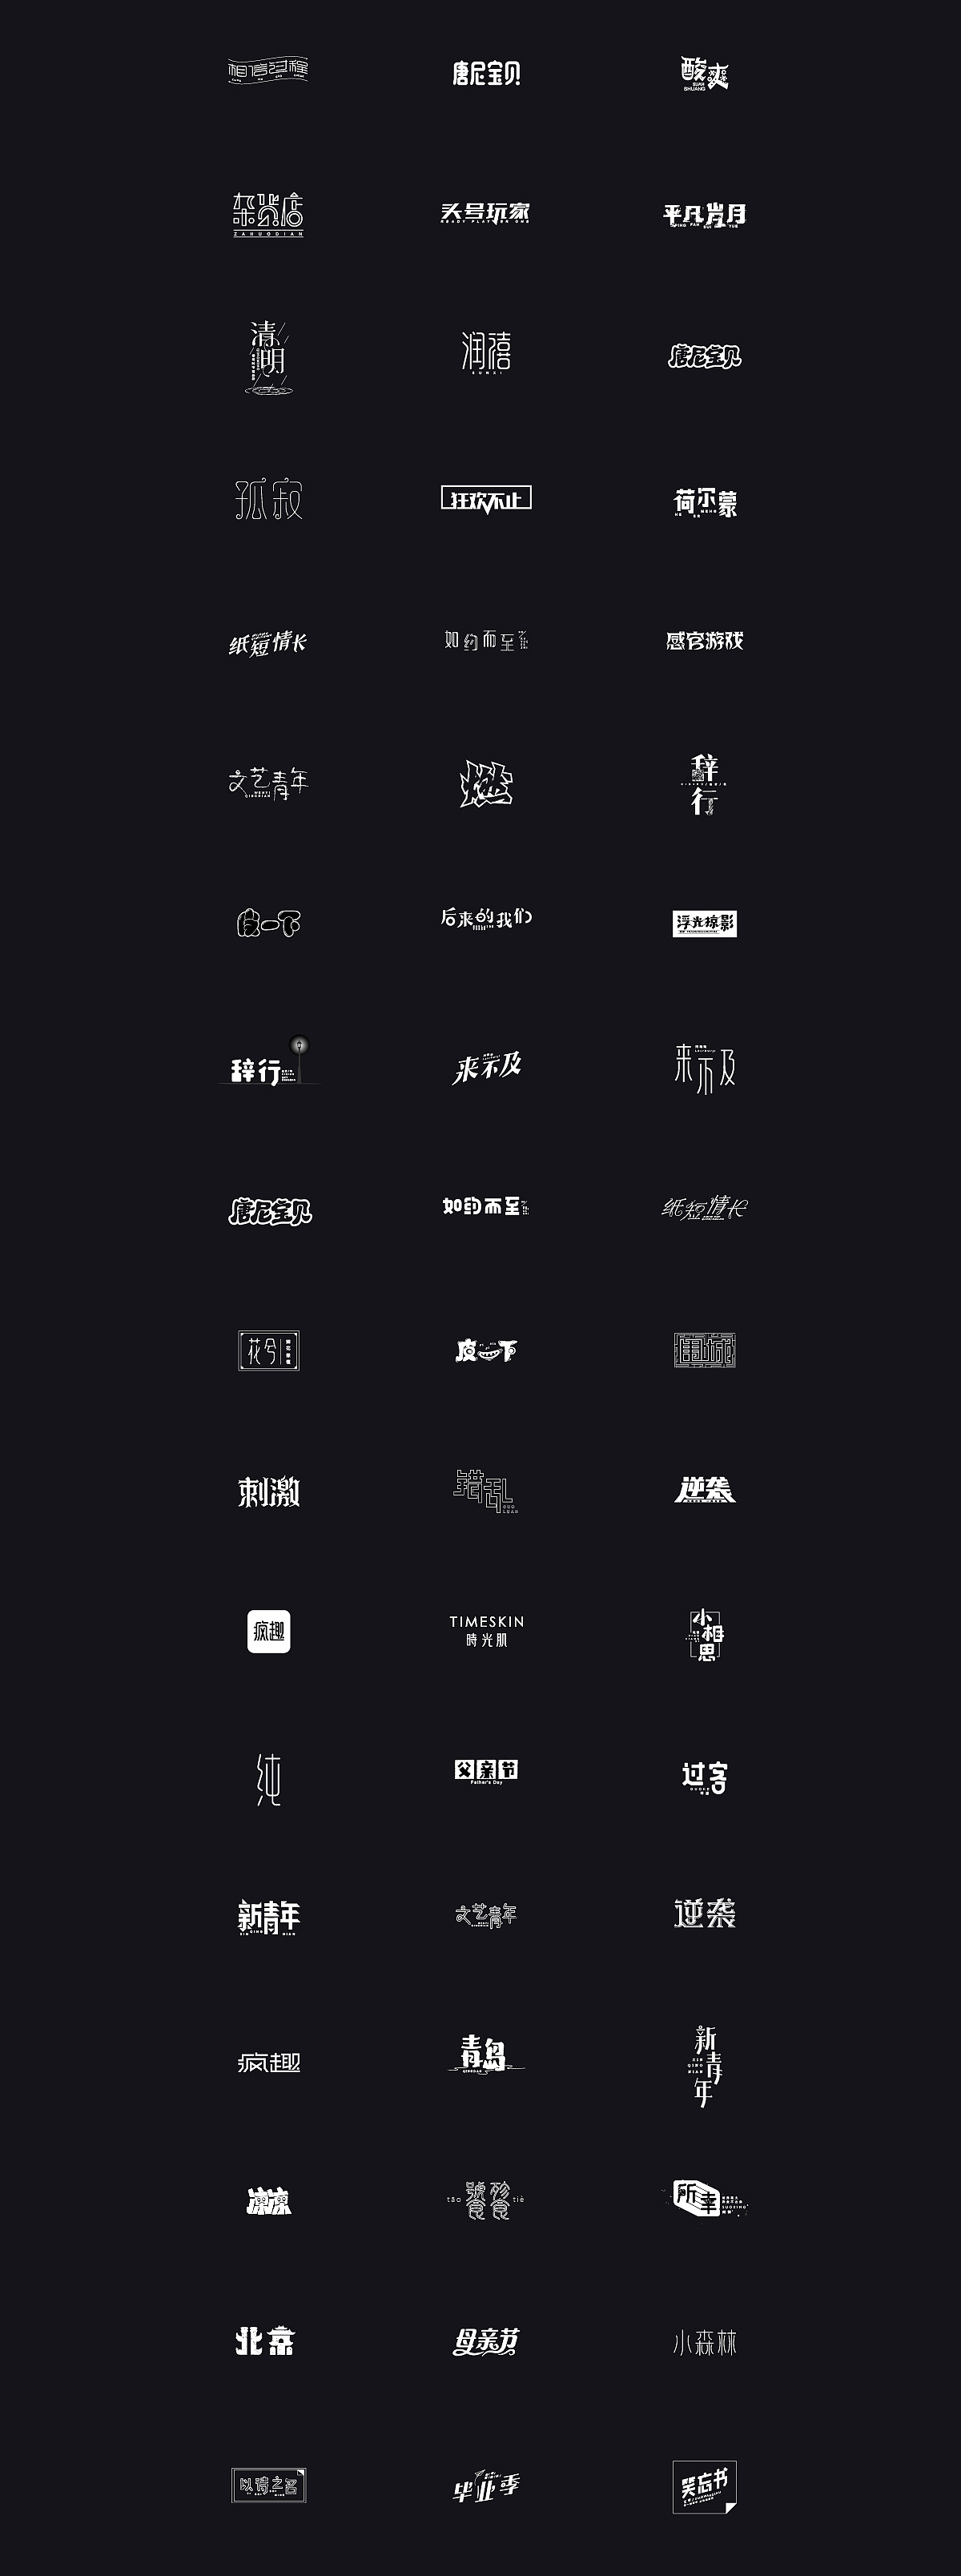 2018 Font Design Collection - 95P